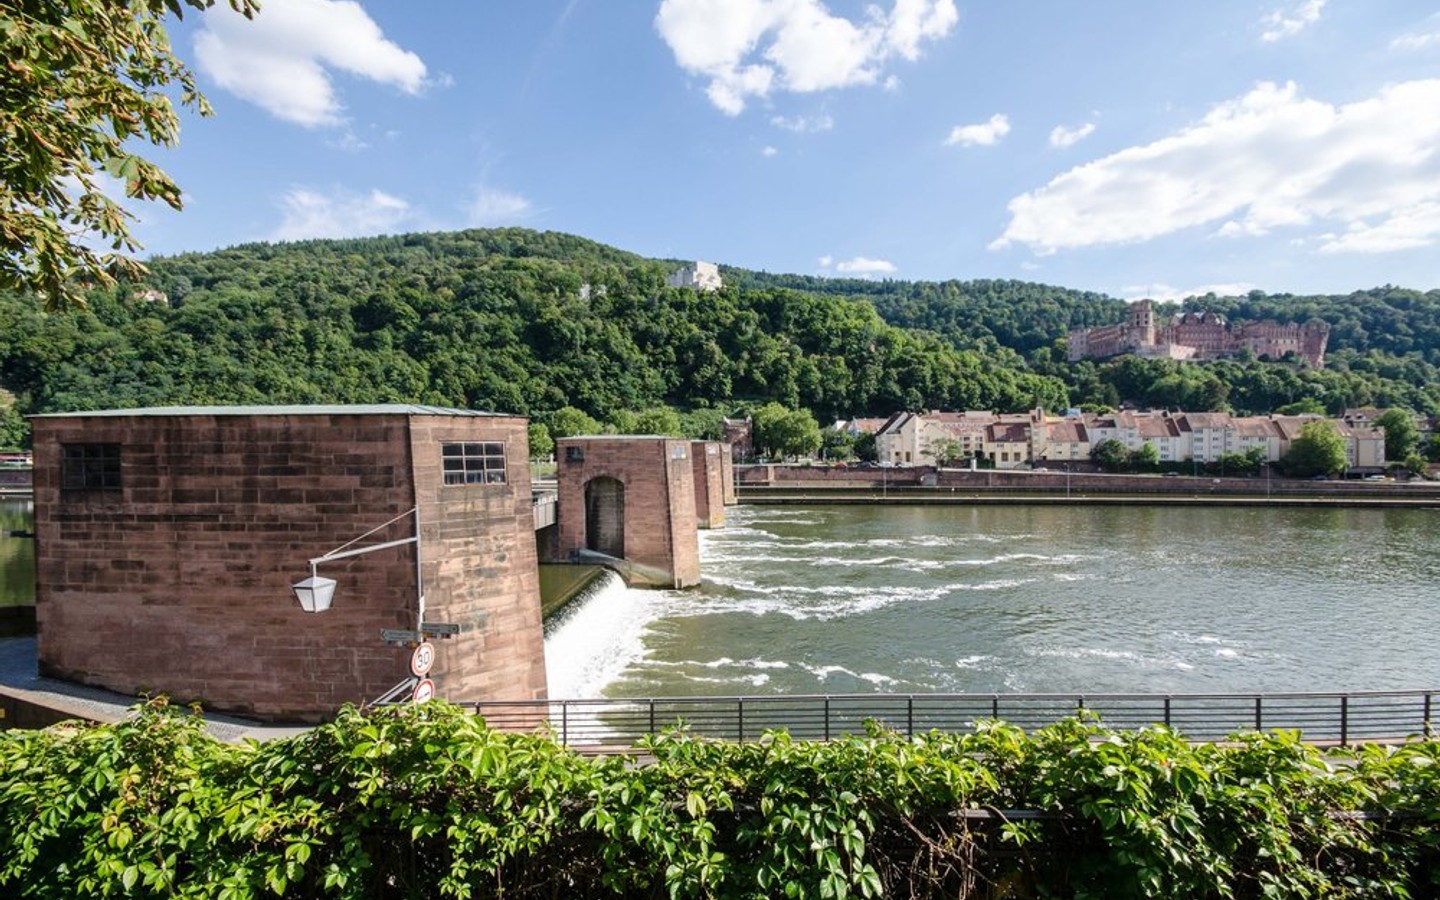 Blick vom Balkon - Einfach malerisch:  Wohnen am Neckar mit Schloßblick und eigenem Garten